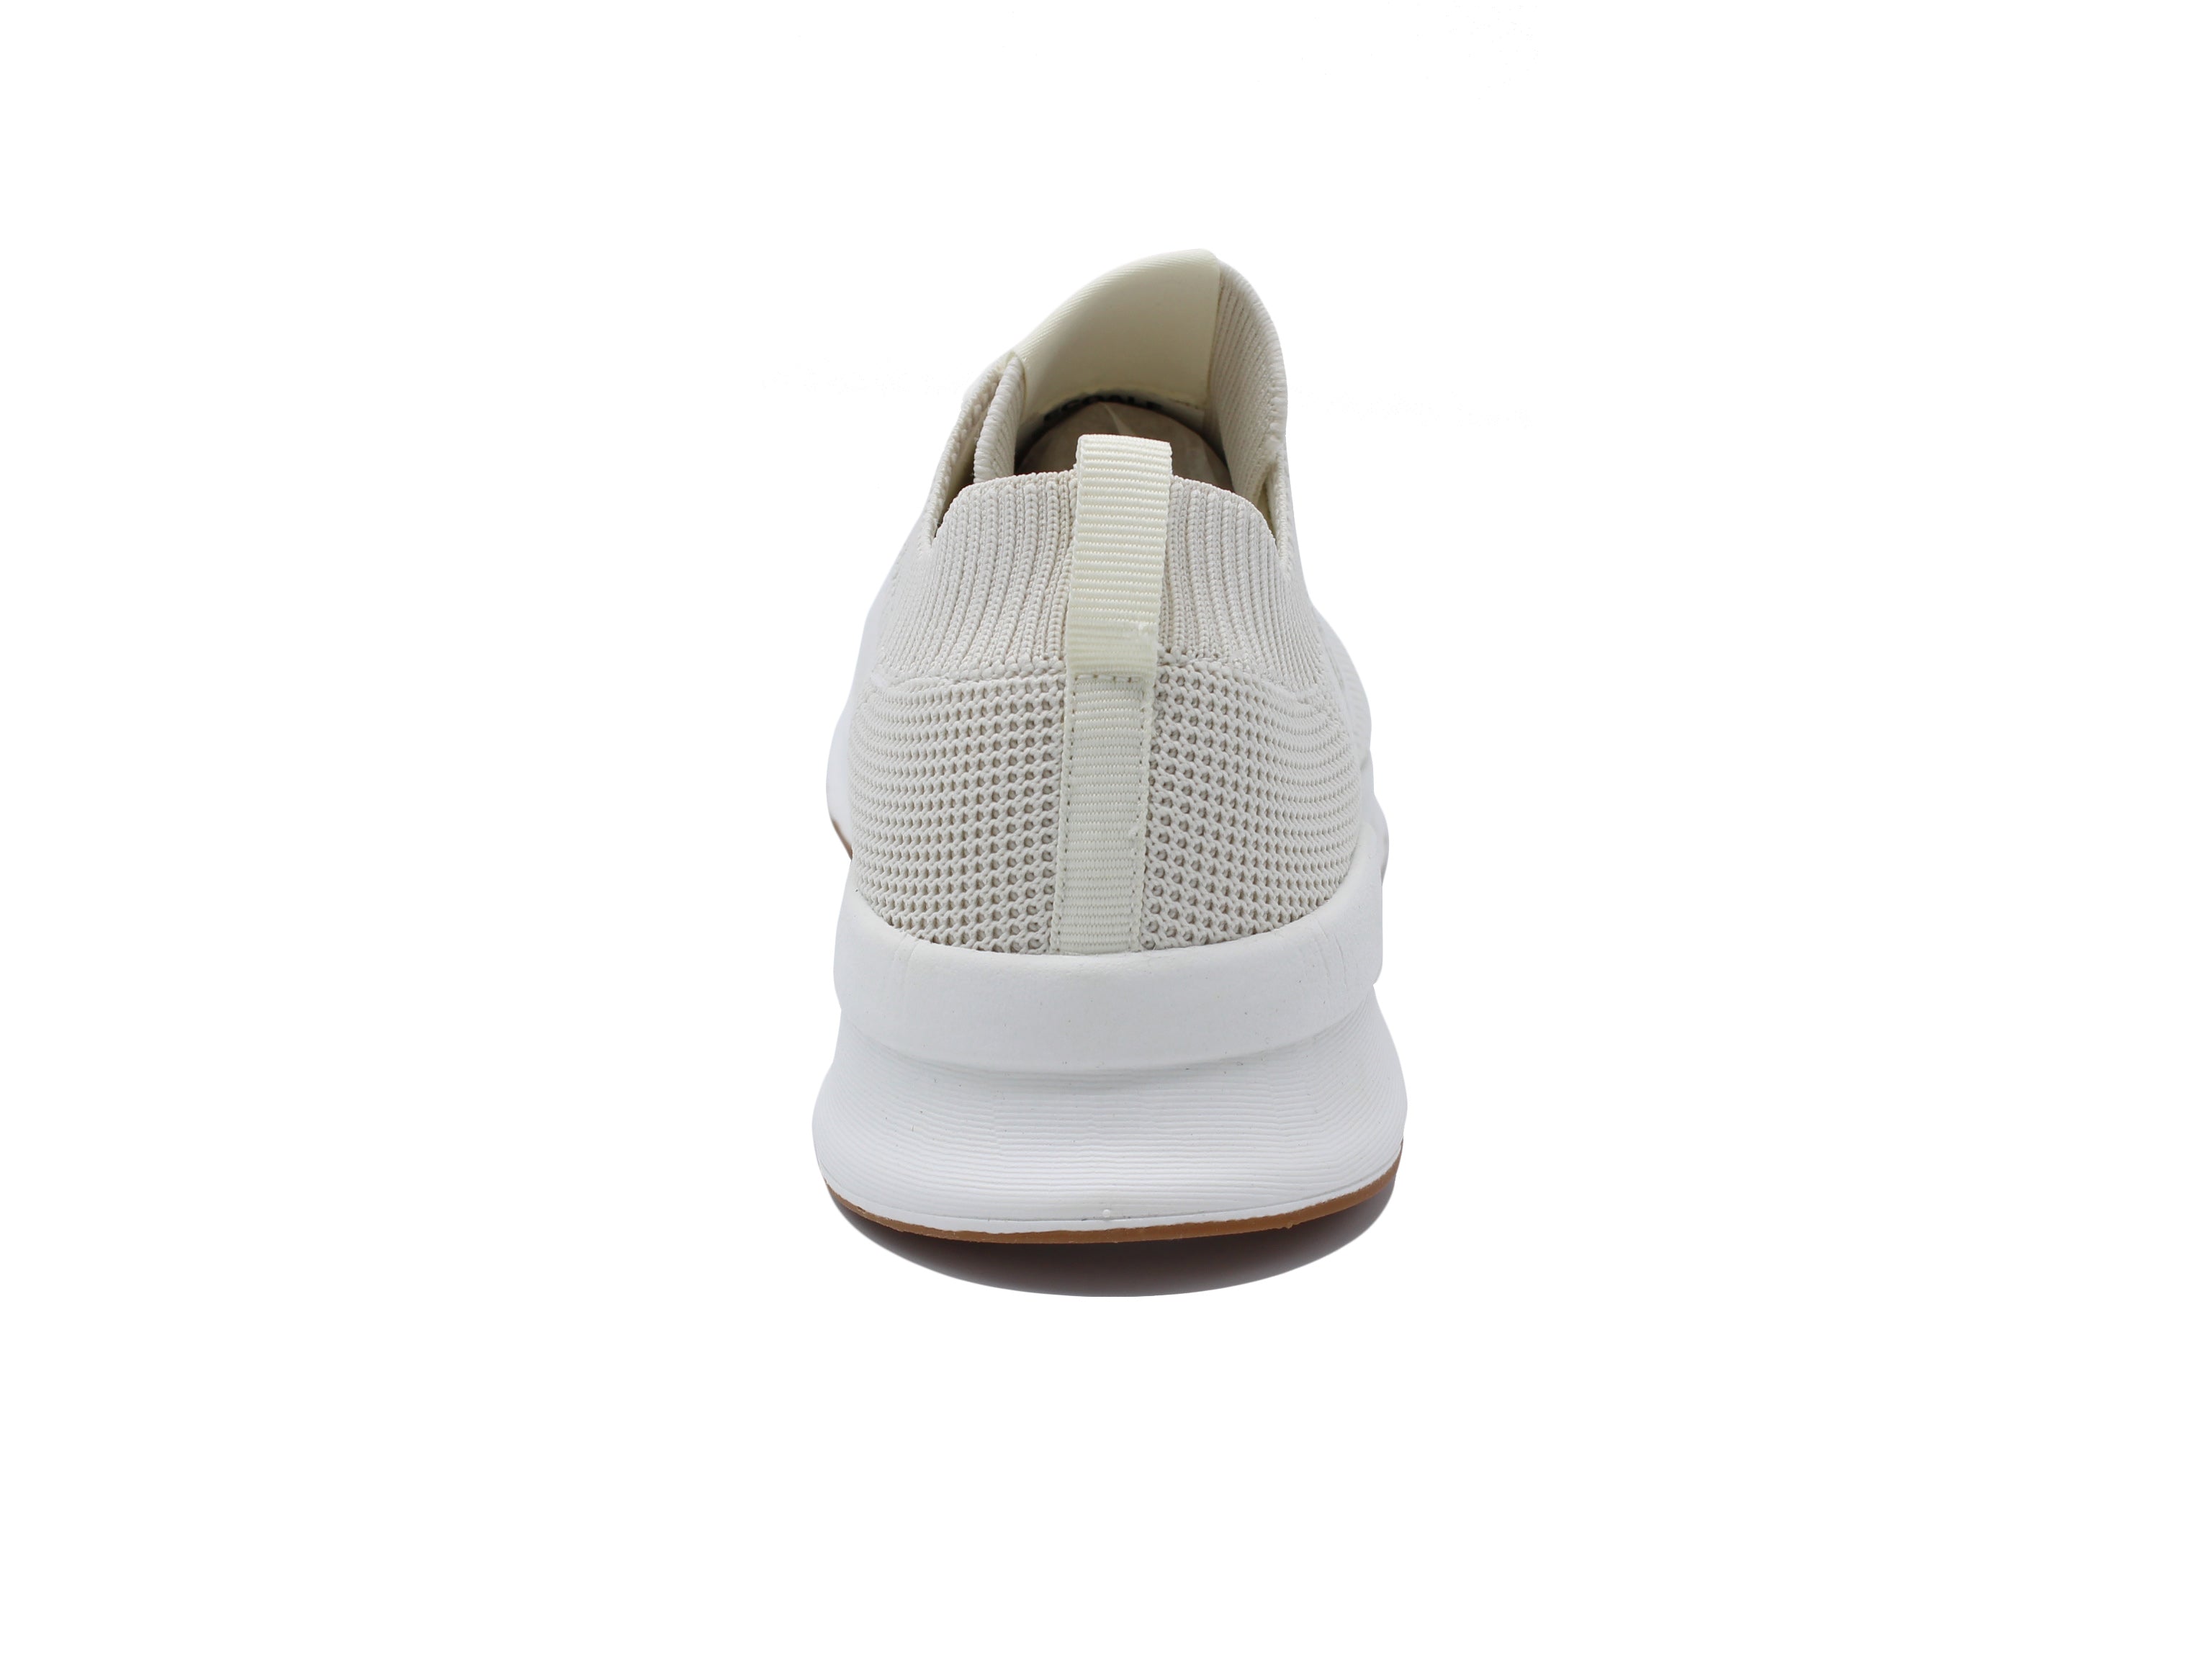 Prinalf Kint white sneaker